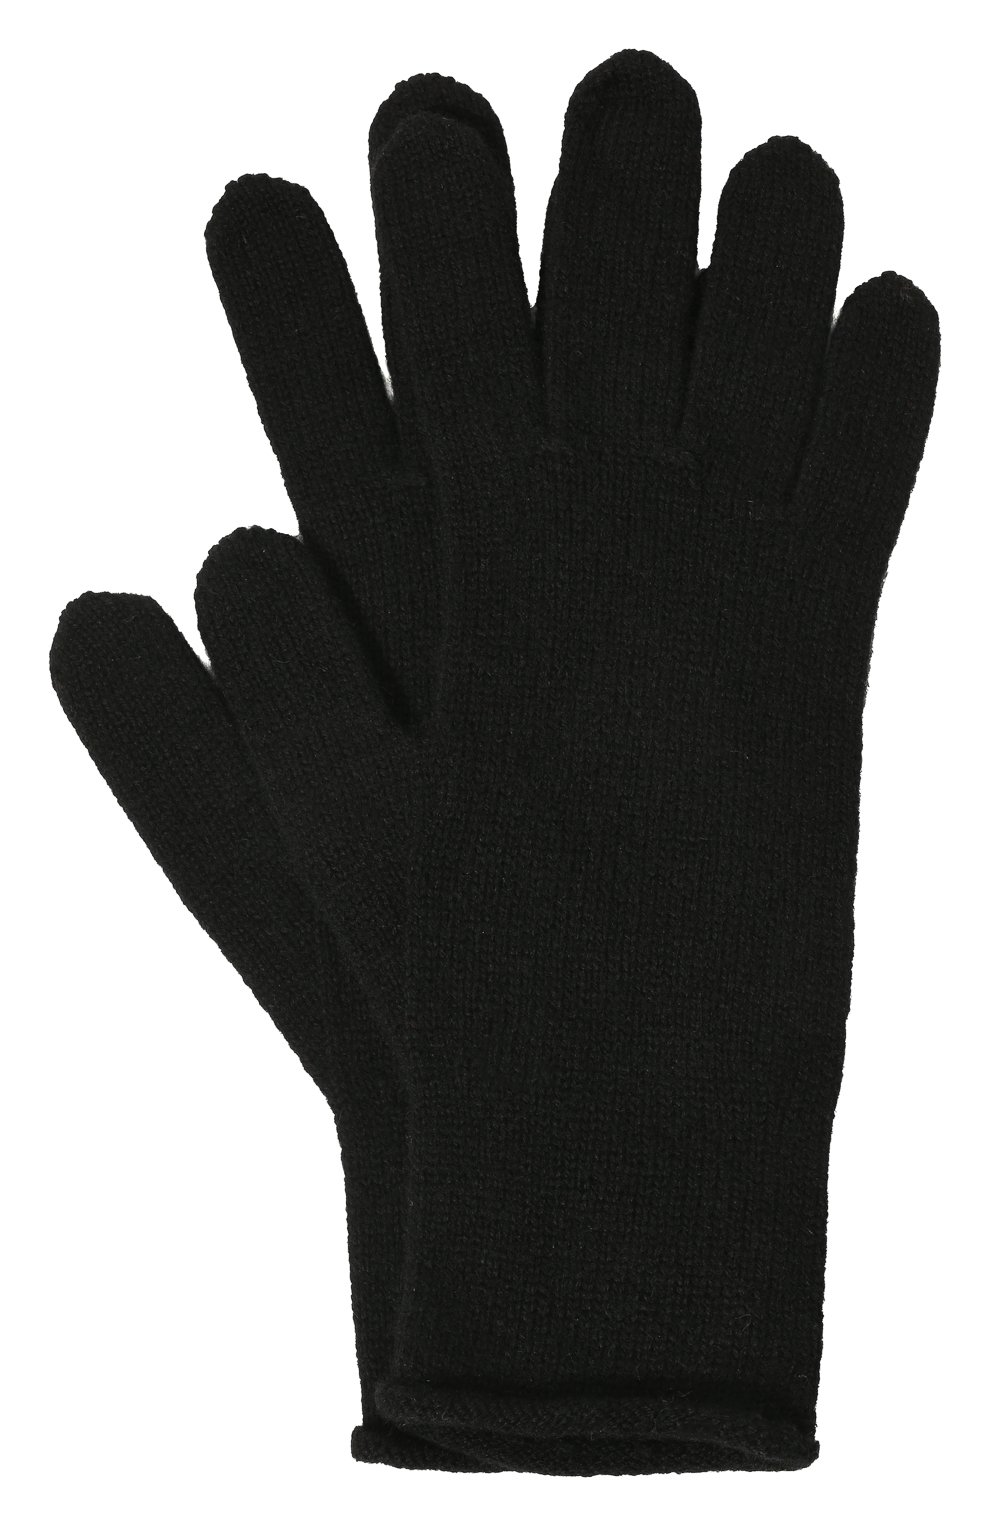 Женские перчатки aimi из шерсти и кашемира CANOE черного цвета, арт. 6100410 | Фото 1 (Материал: Текстиль, Шерсть)